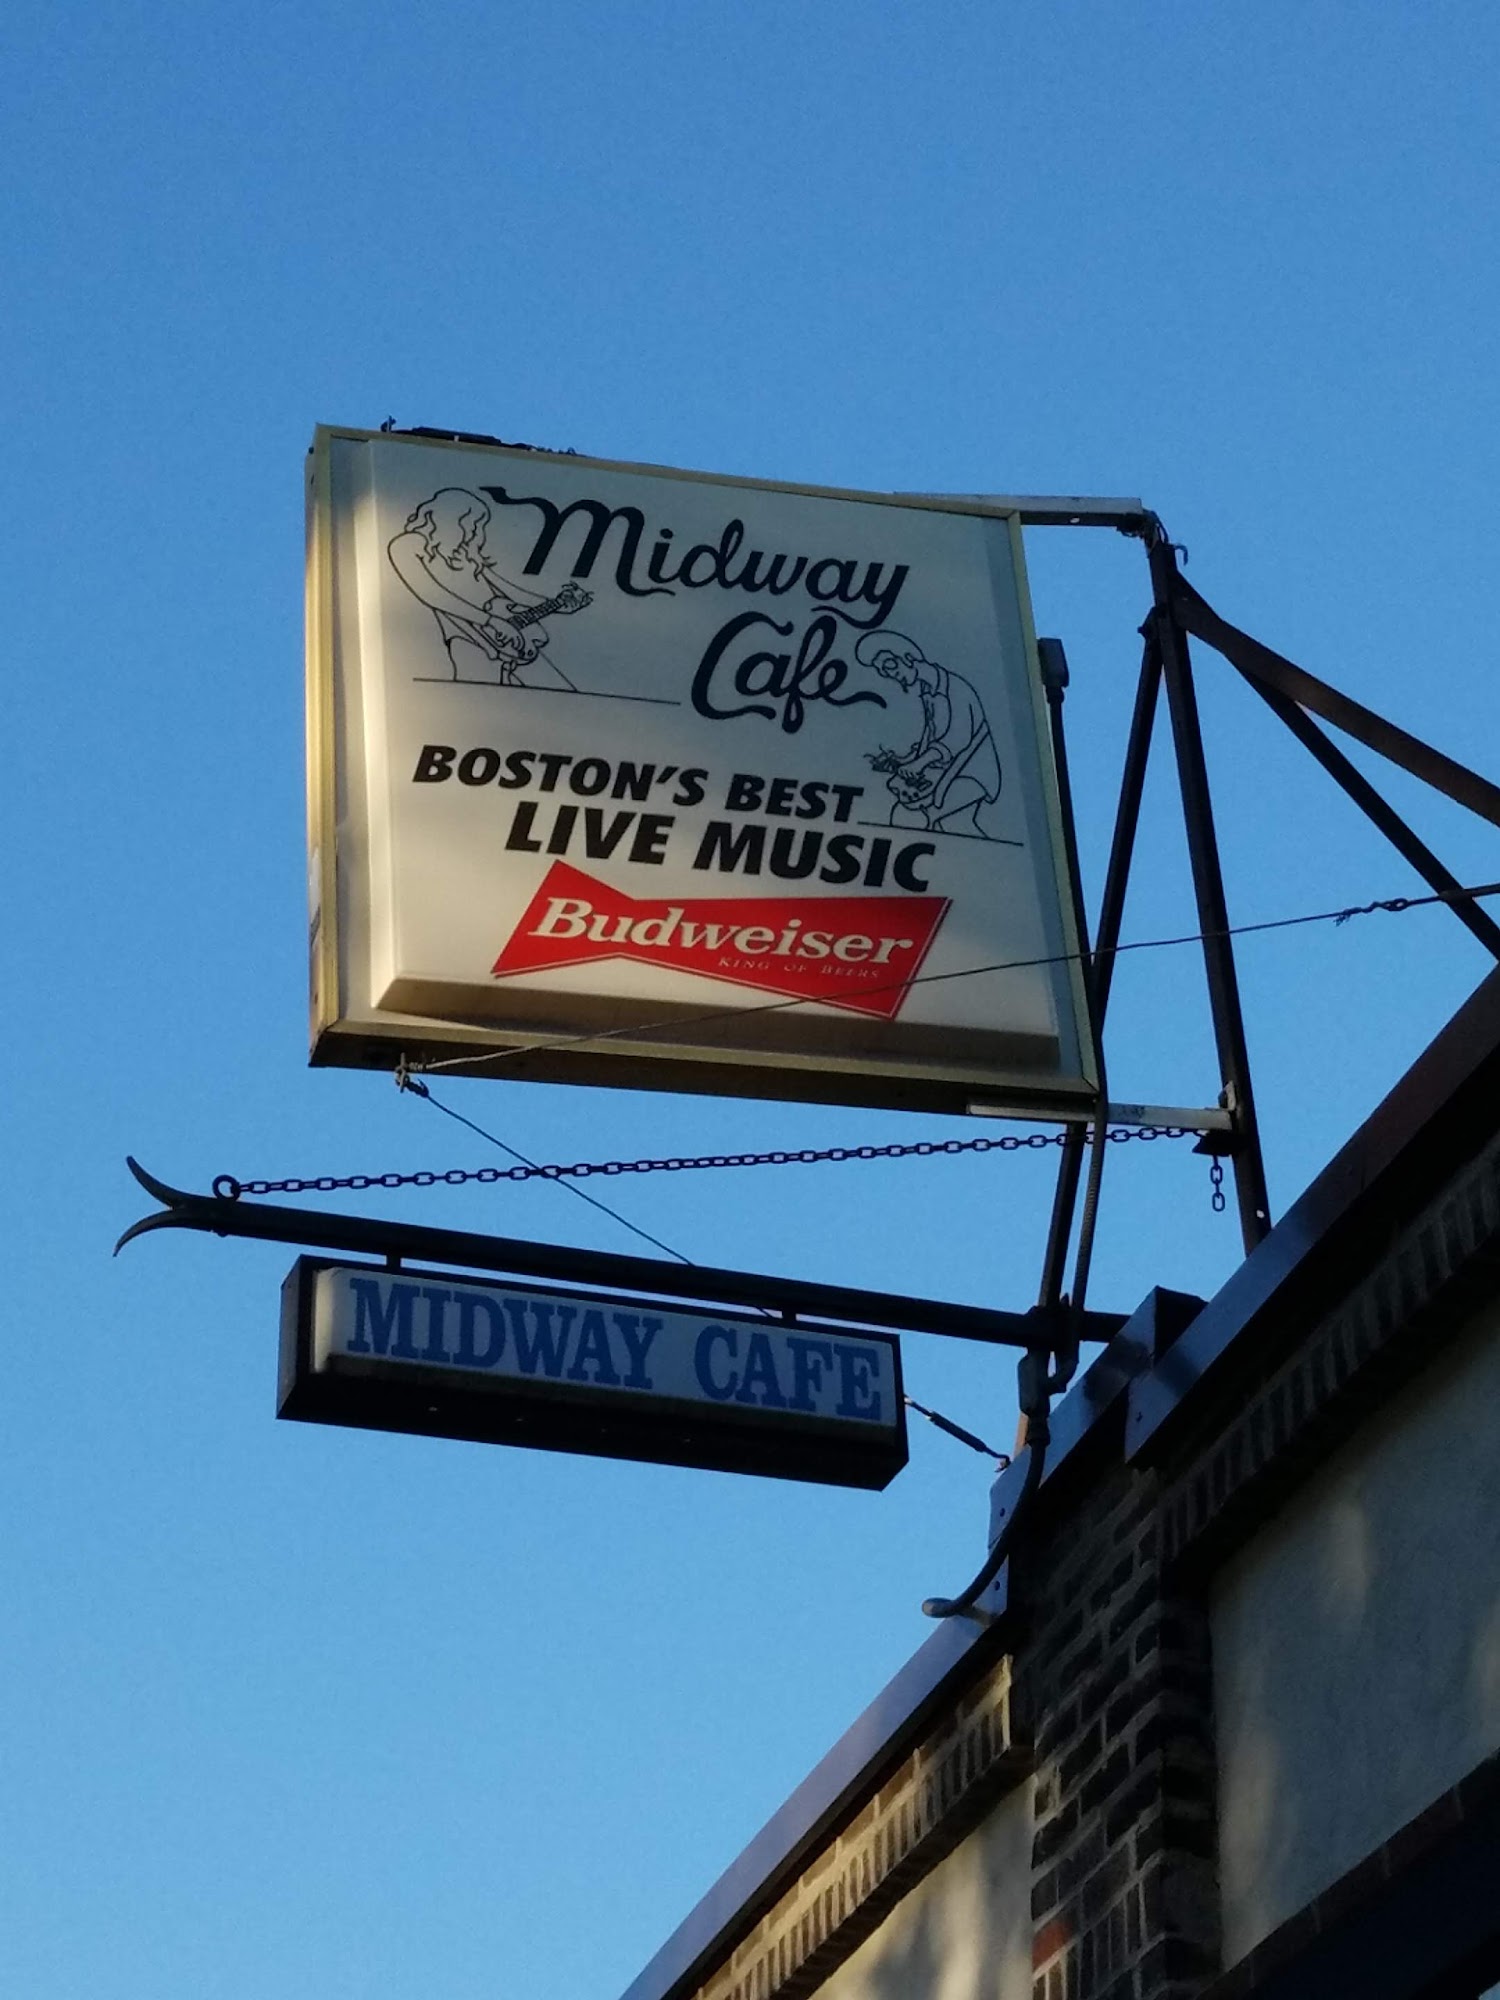 Midway Café